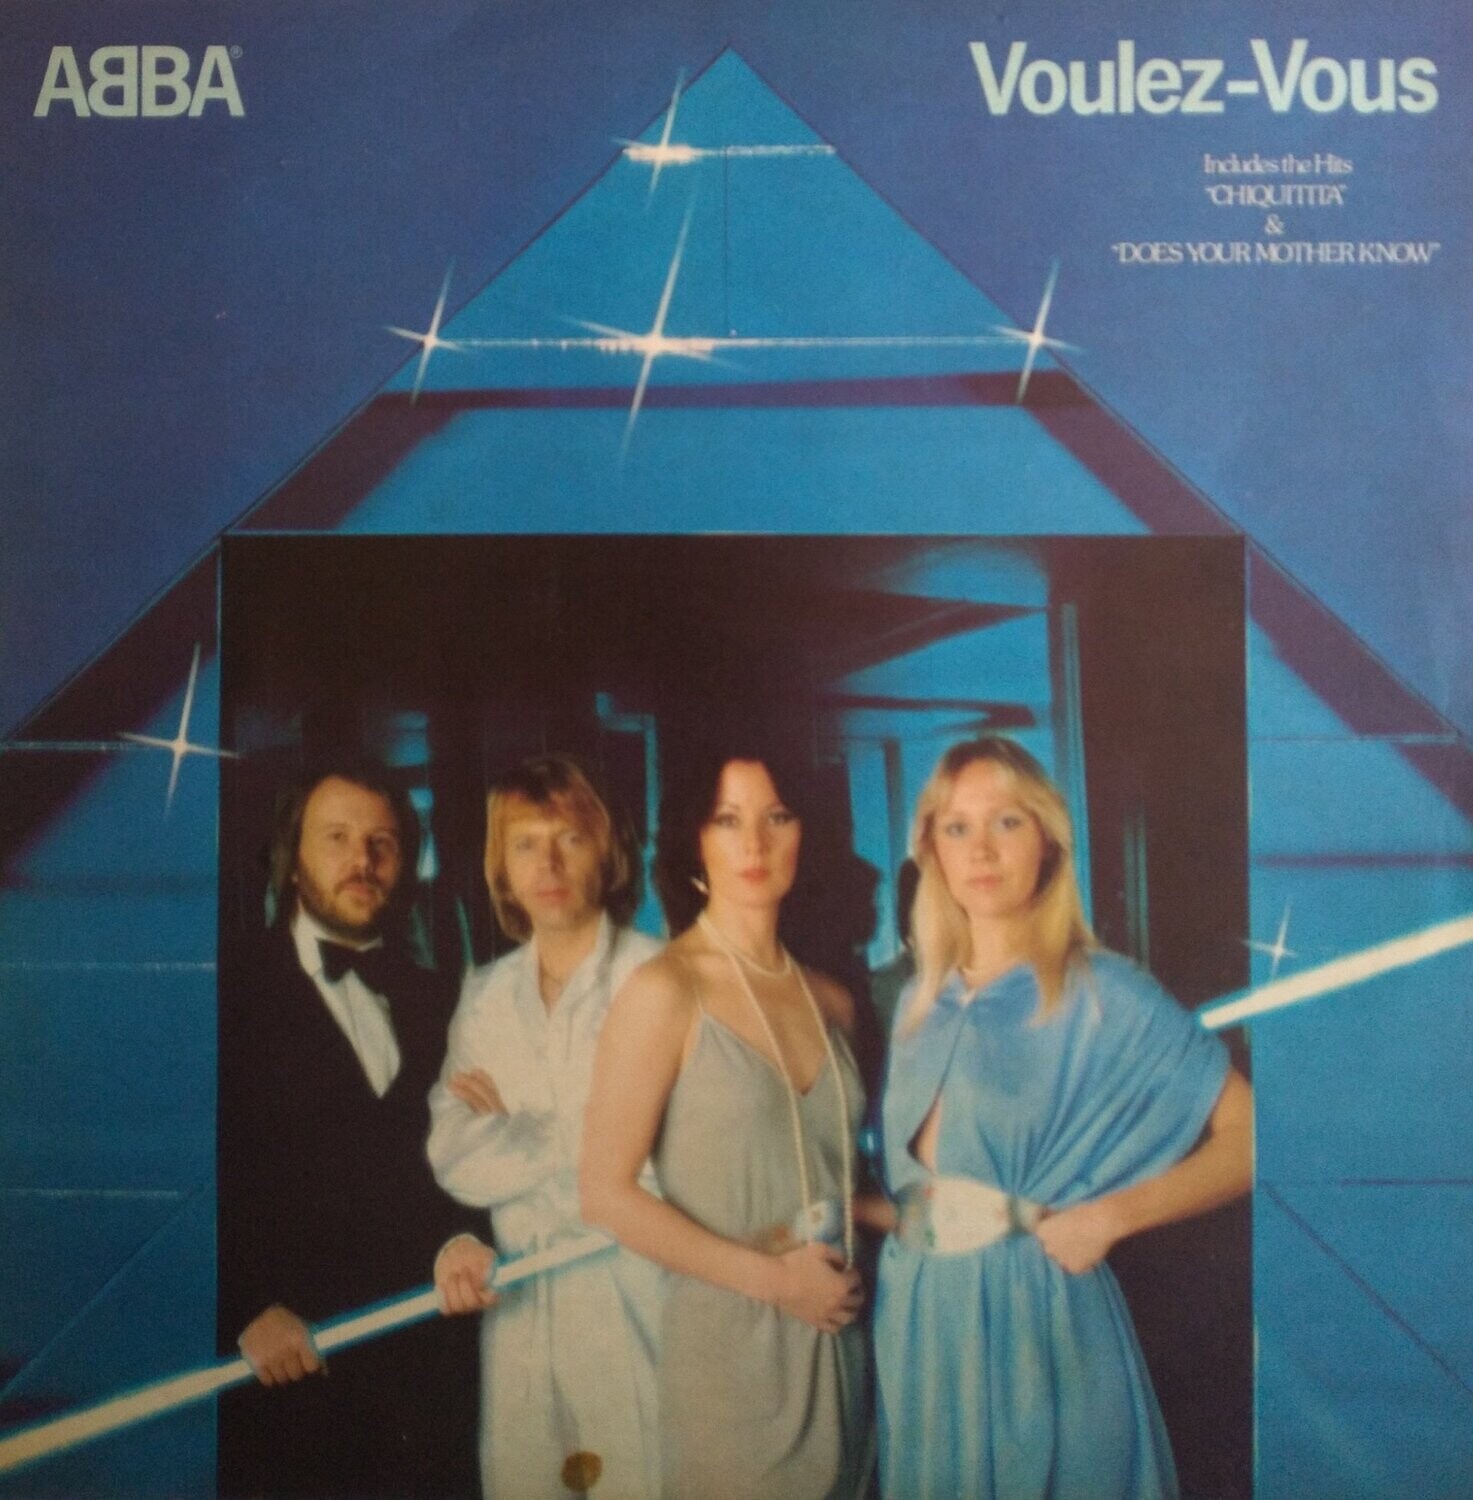 ABBA – Voulez-Vous (1979)